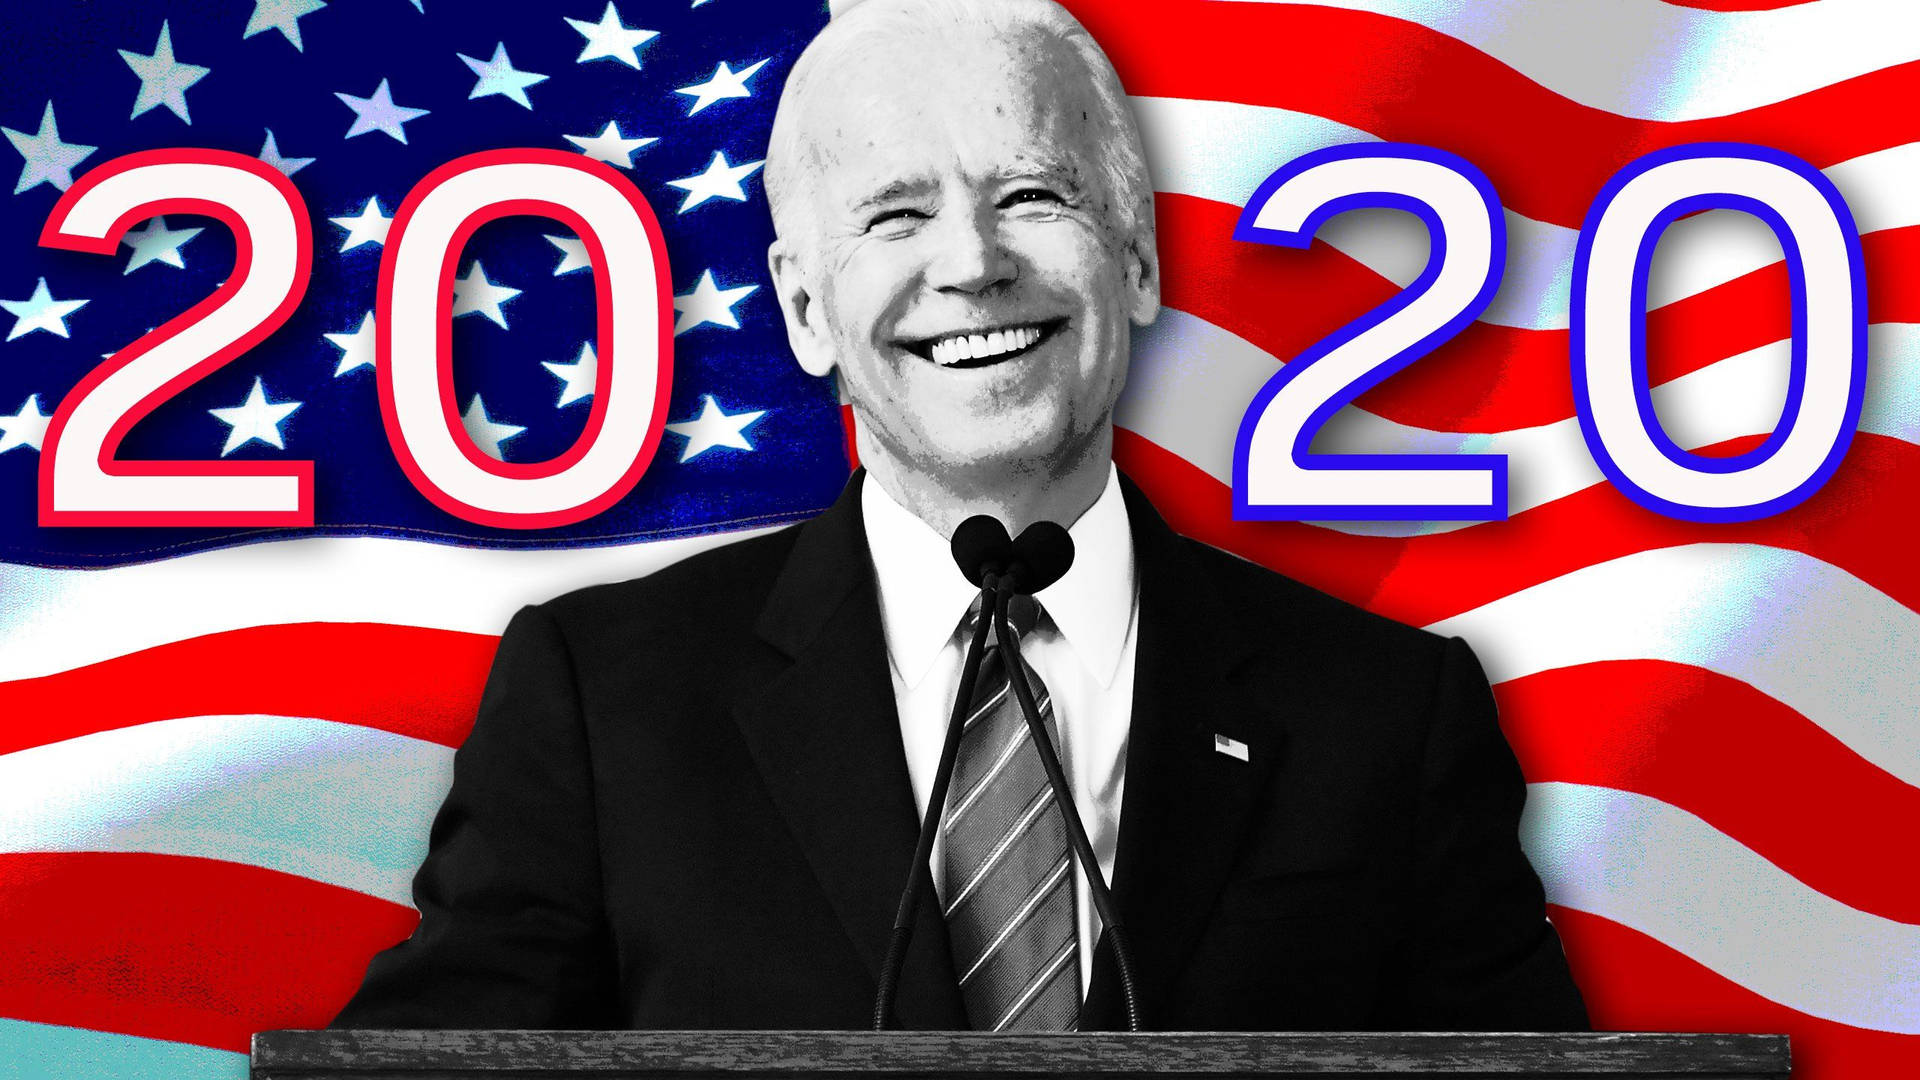 Join Joe Biden in the 2020 Election Wallpaper